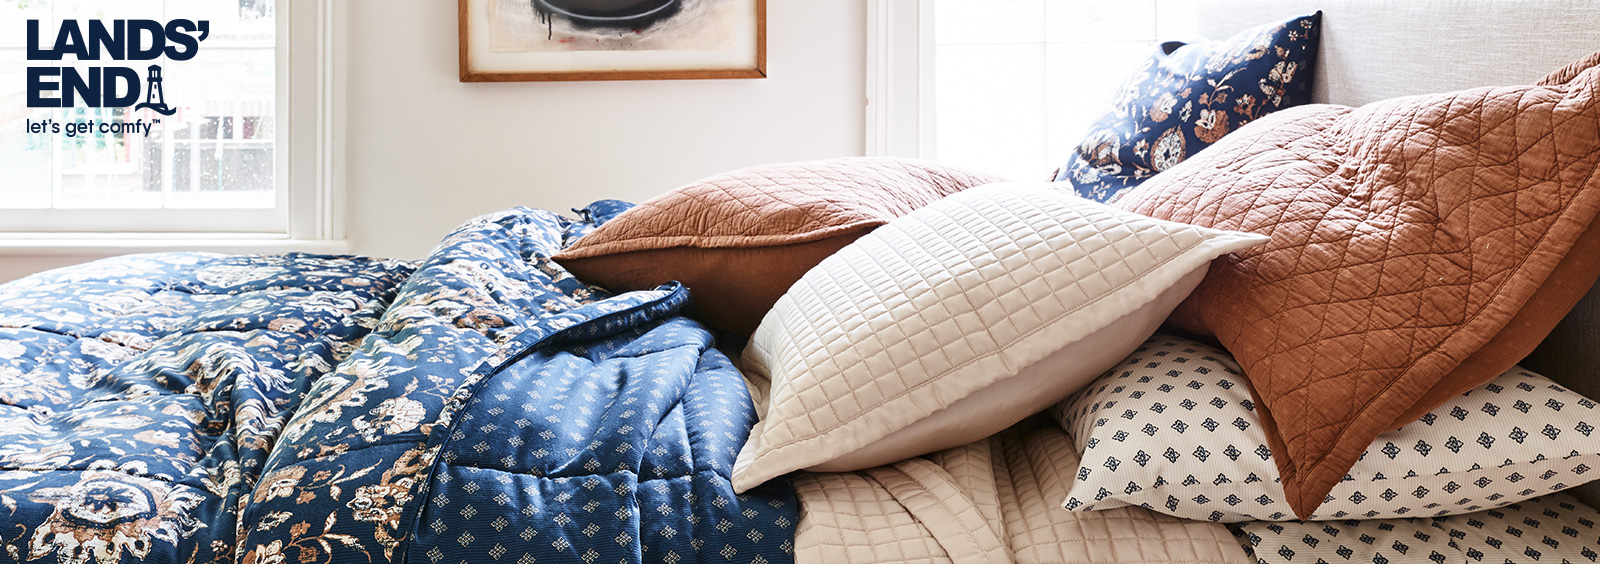 Welches Bettlakenmaterial eignet sich am besten für das kühle Herbstwetter?